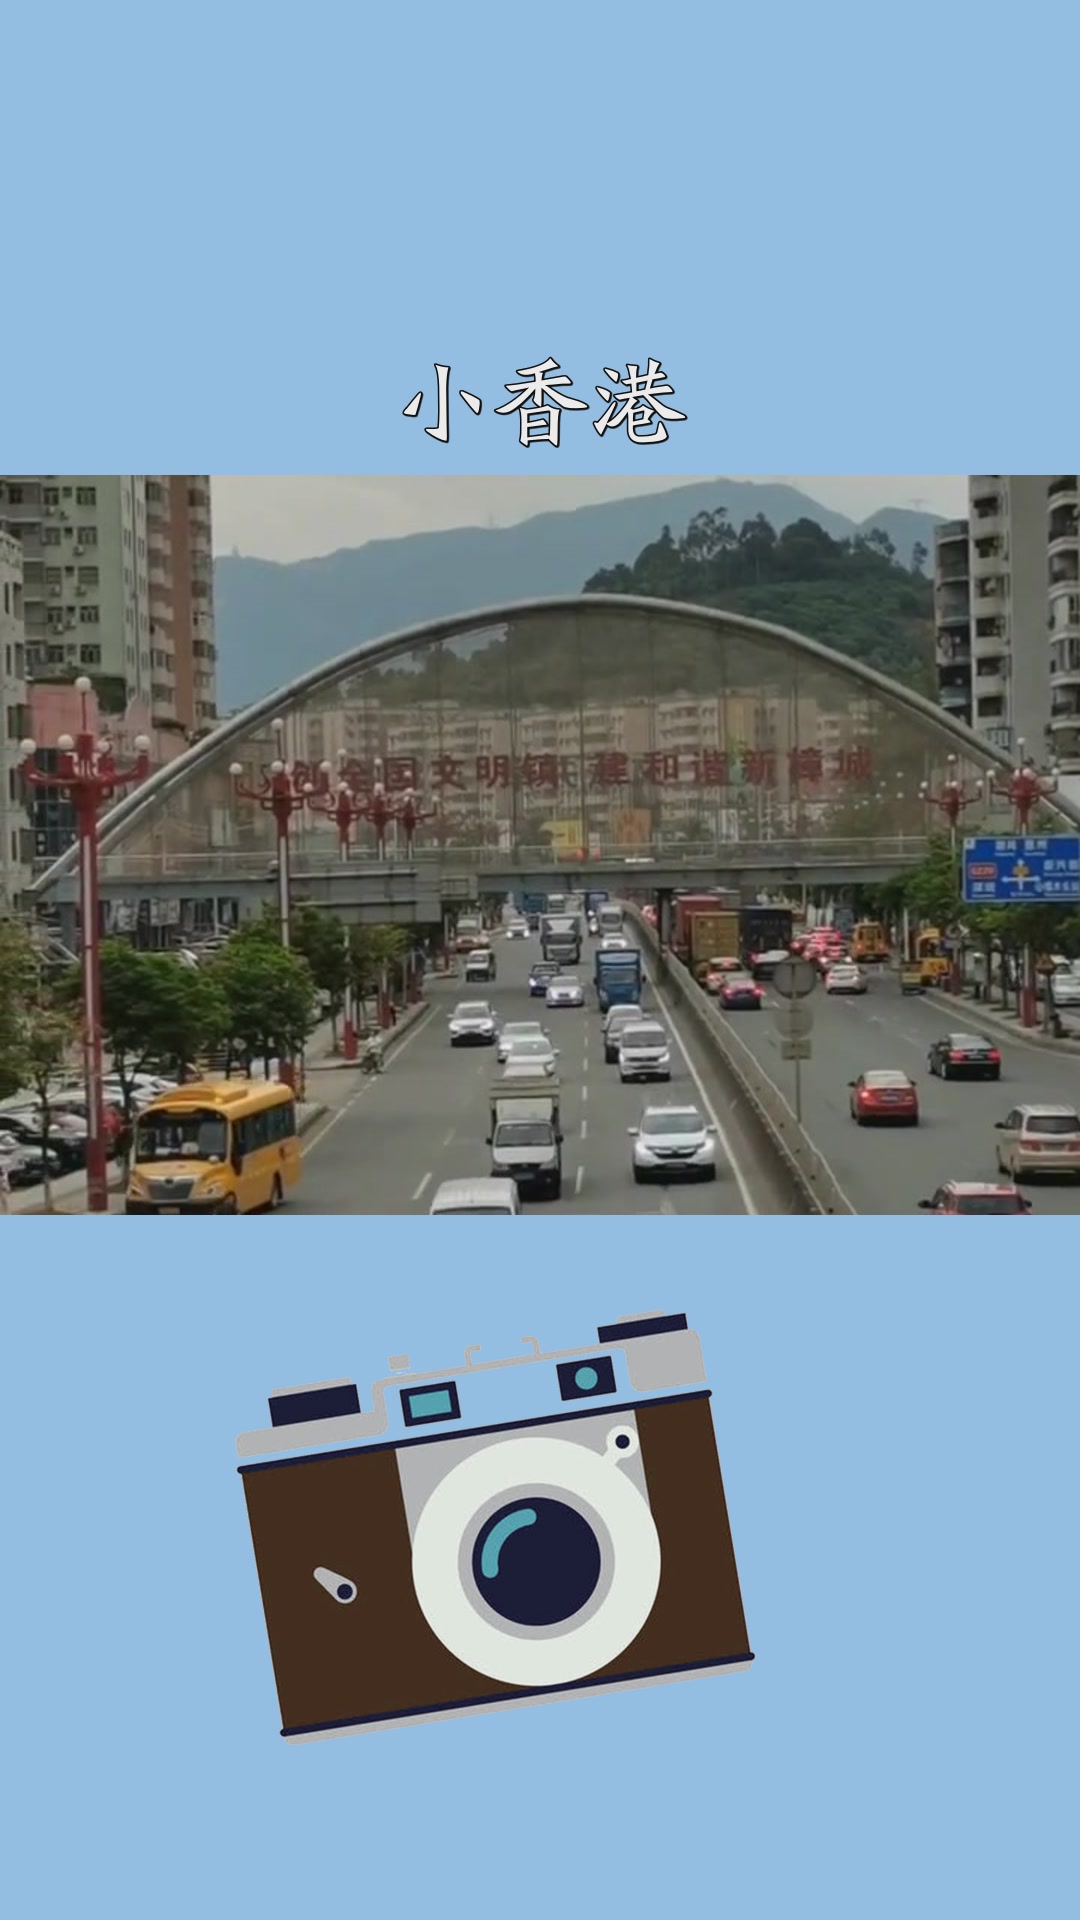 中国小香港之称,东莞樟木头镇,多少人来过?